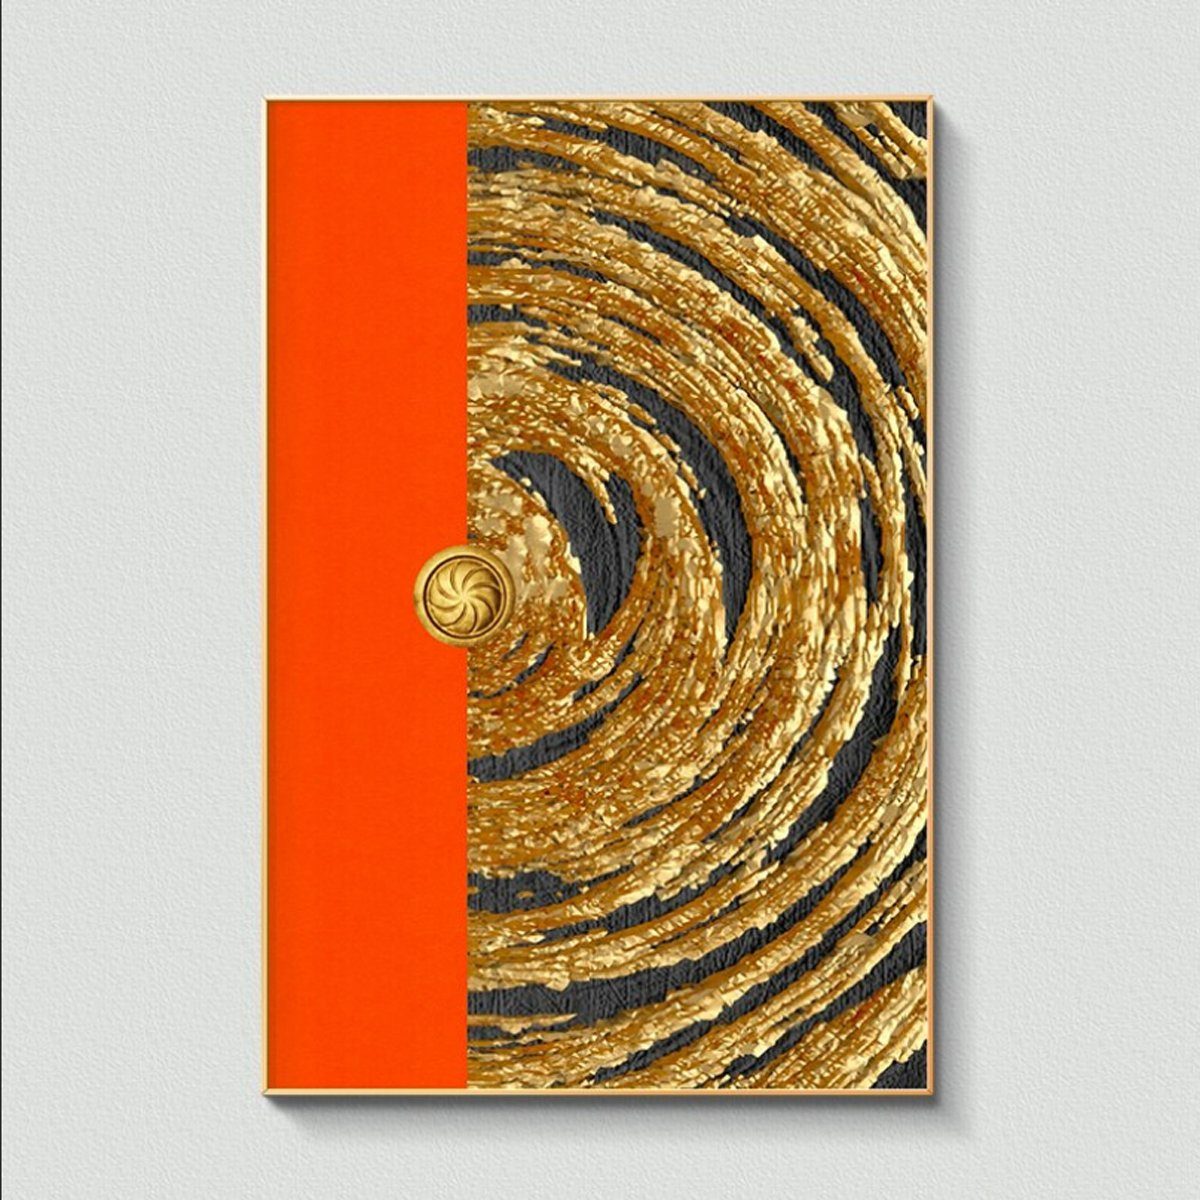 TPFLiving Kunstdruck (OHNE RAHMEN) Poster - Leinwand - Wandbild, Nordic Art - Abstrakte Motive - Bilder Wohnzimmer - (7 Motive in 7 verschiedenen Größen zur Auswahl), Farben: Gold, Schwarz und Orange - Größe: 21x30cm